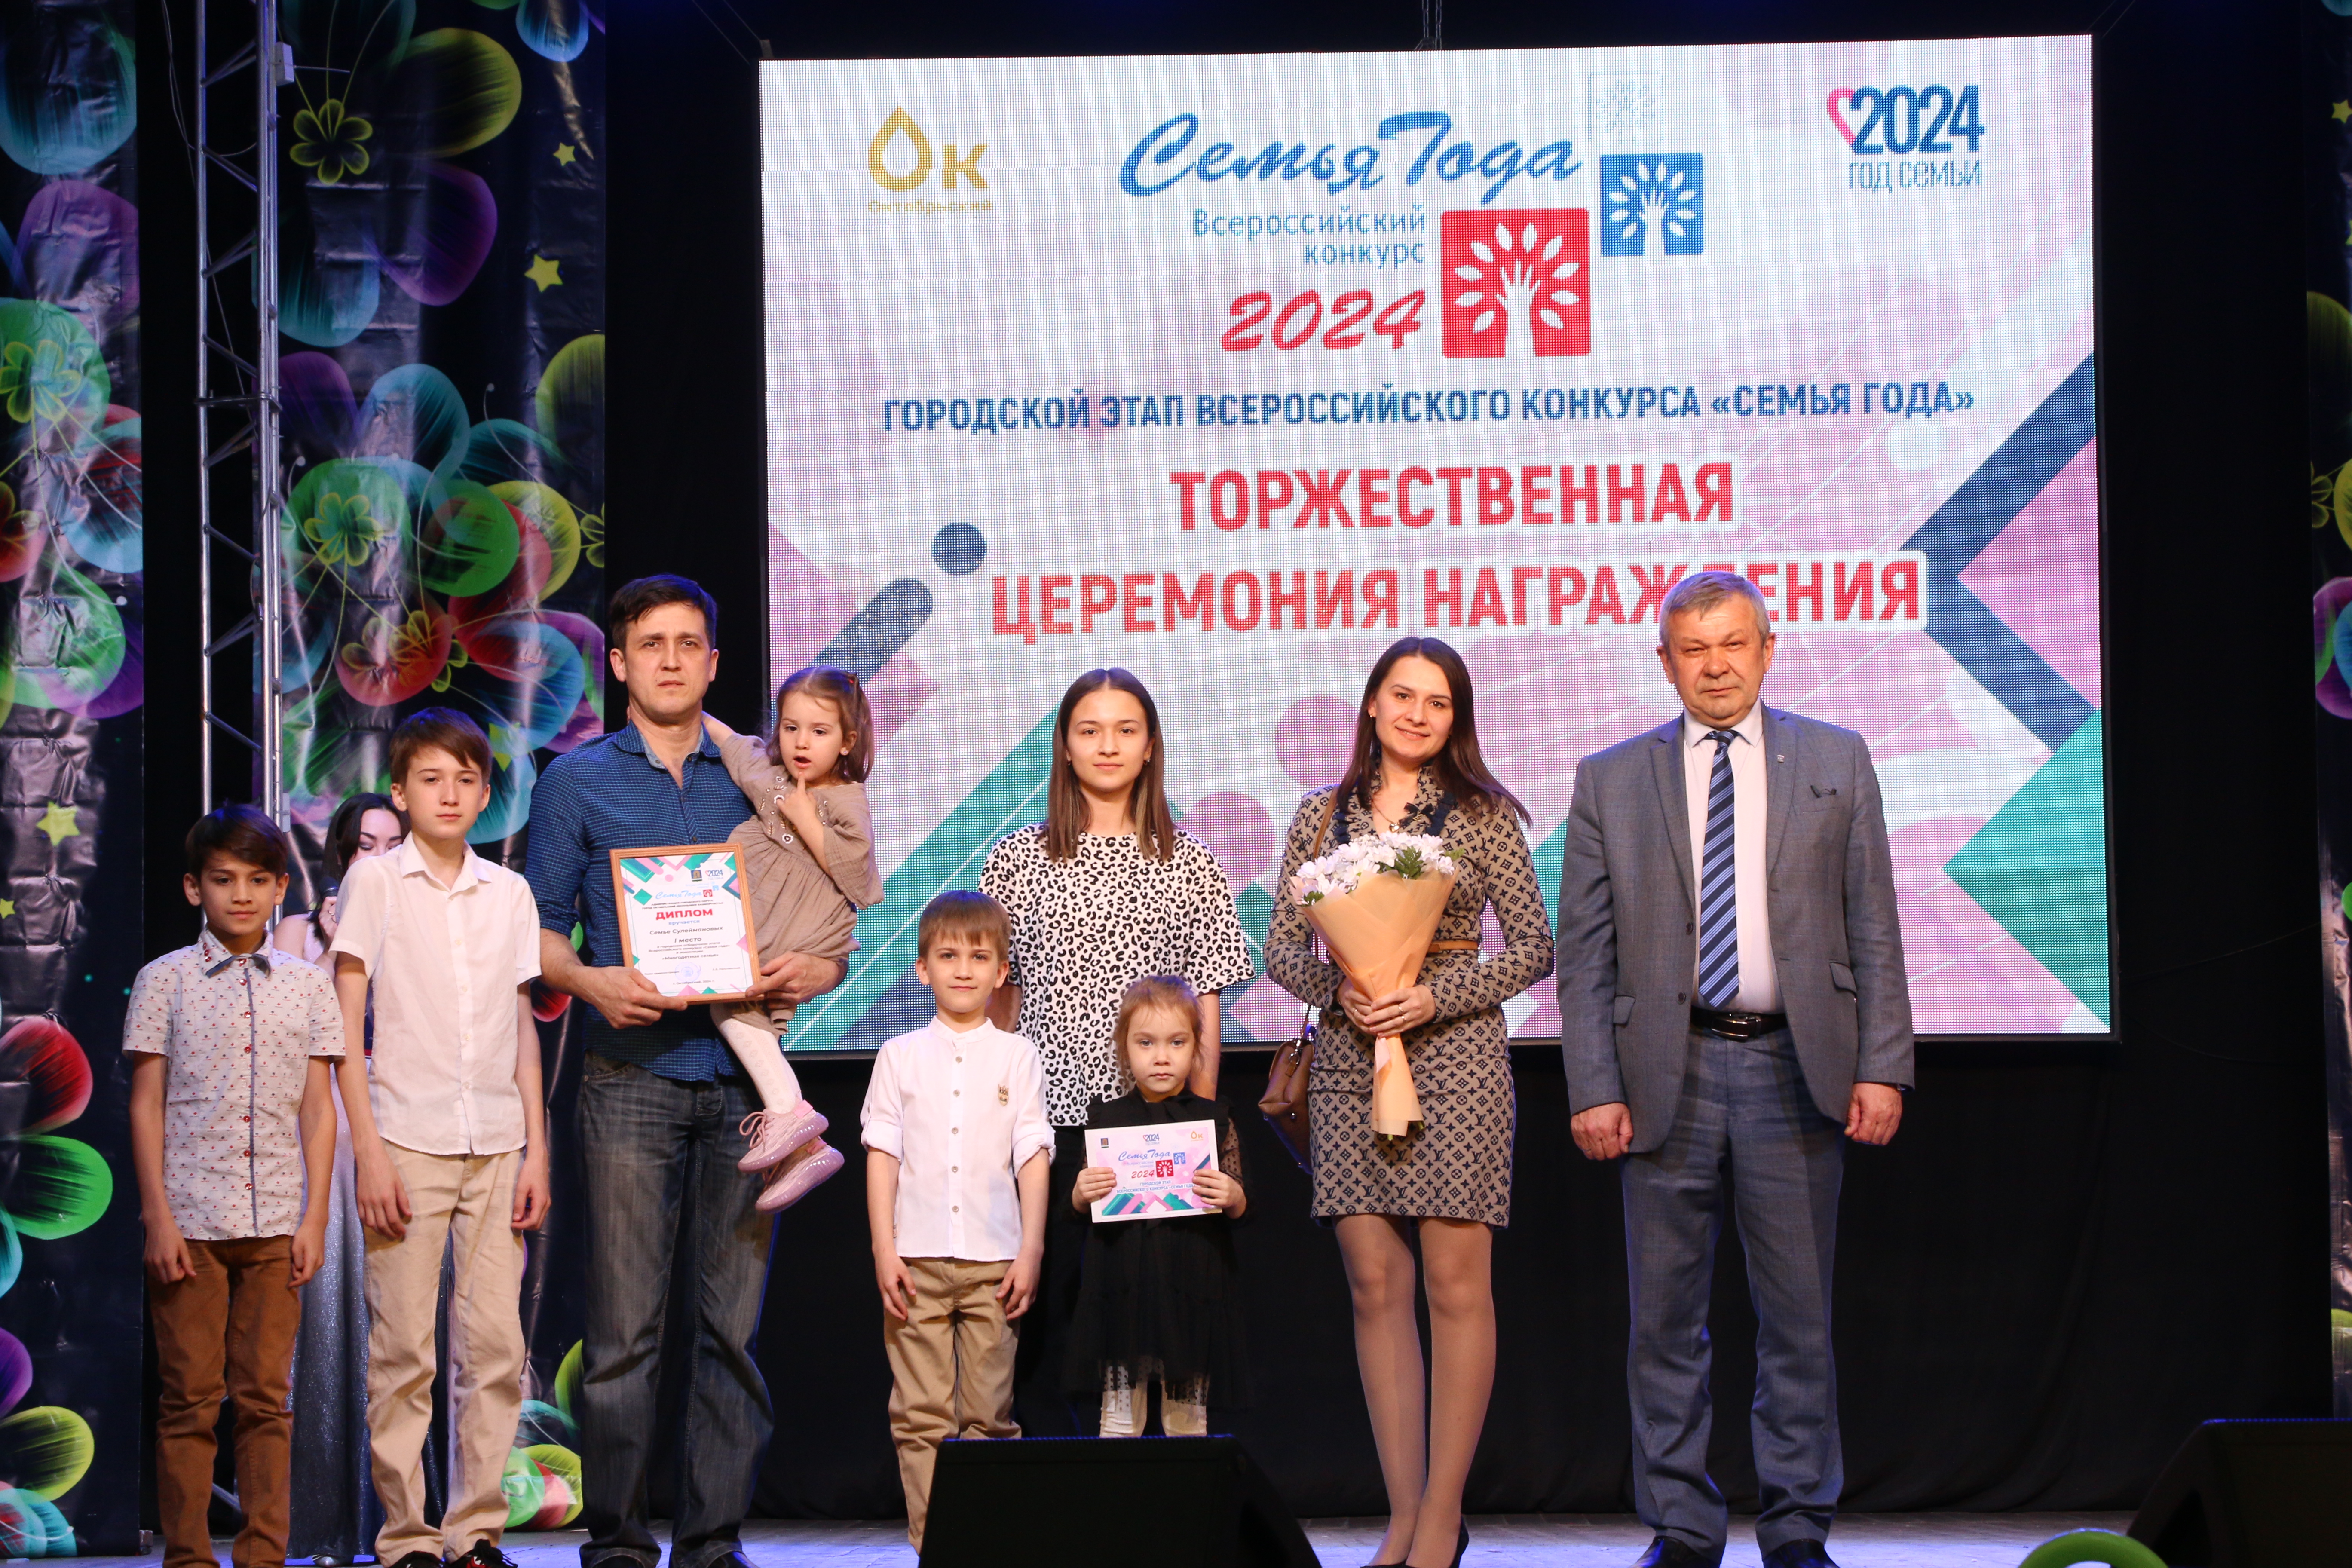 8 семей из Октябрьского стали номинантами Всероссийского конкурса «Семья года» 